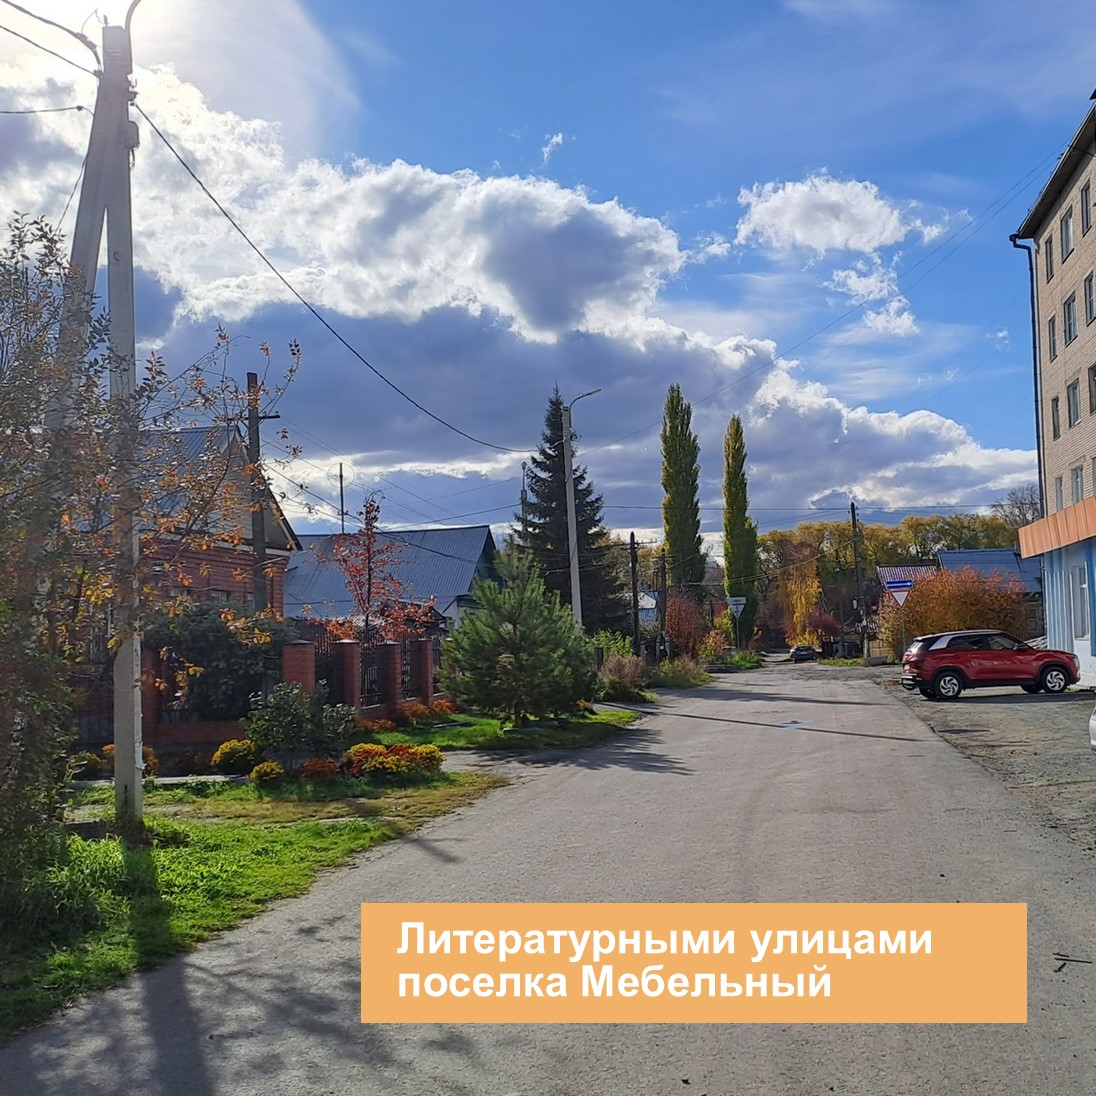 Литературными улицами посёлка Мебельный